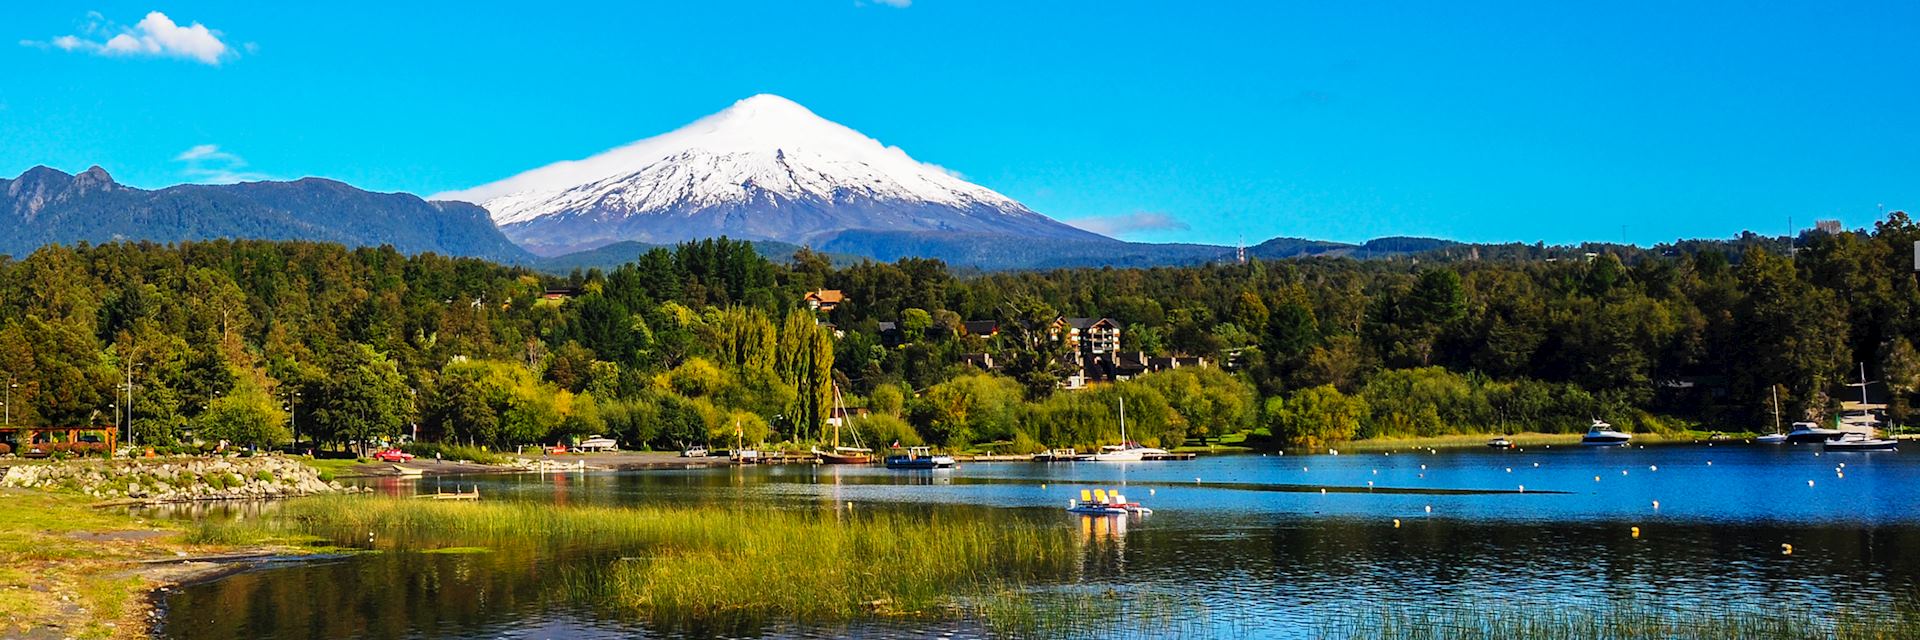  Villarrica Volcano, Chile